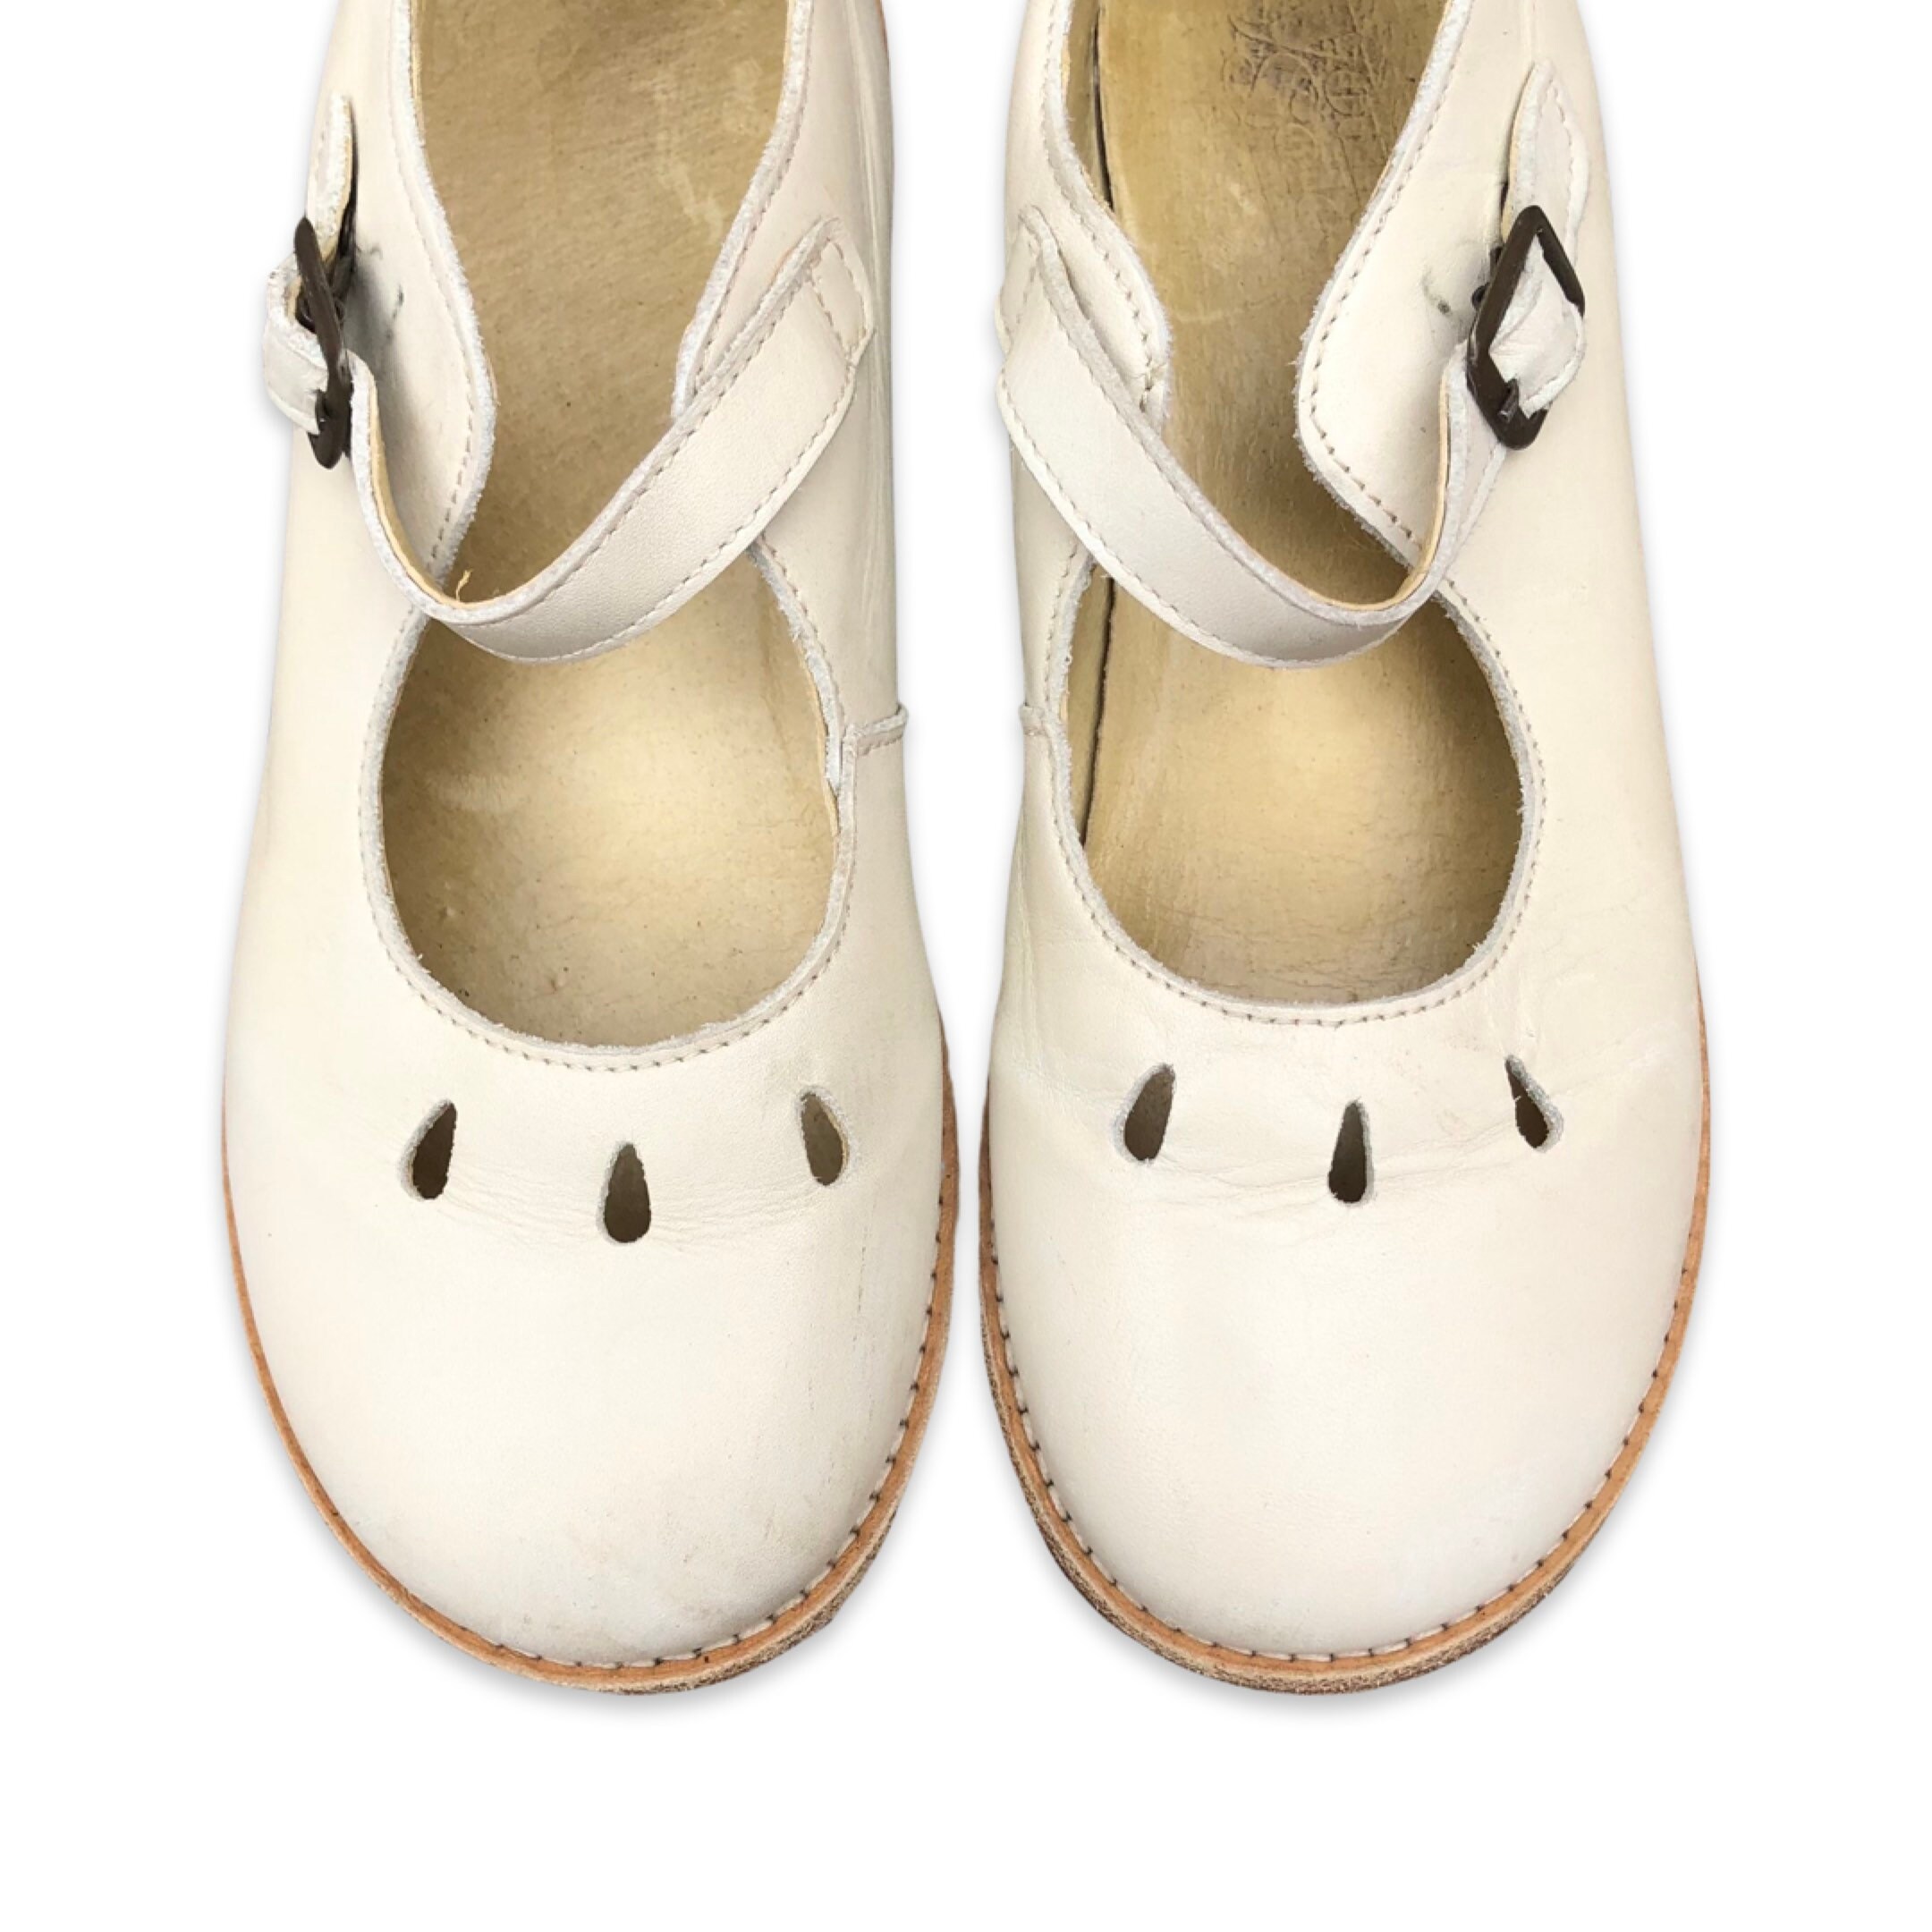 Schoenen Meisjesschoenen Mary Janes Vintage white leather shoes w/ buckle Girls aged 8-10years 